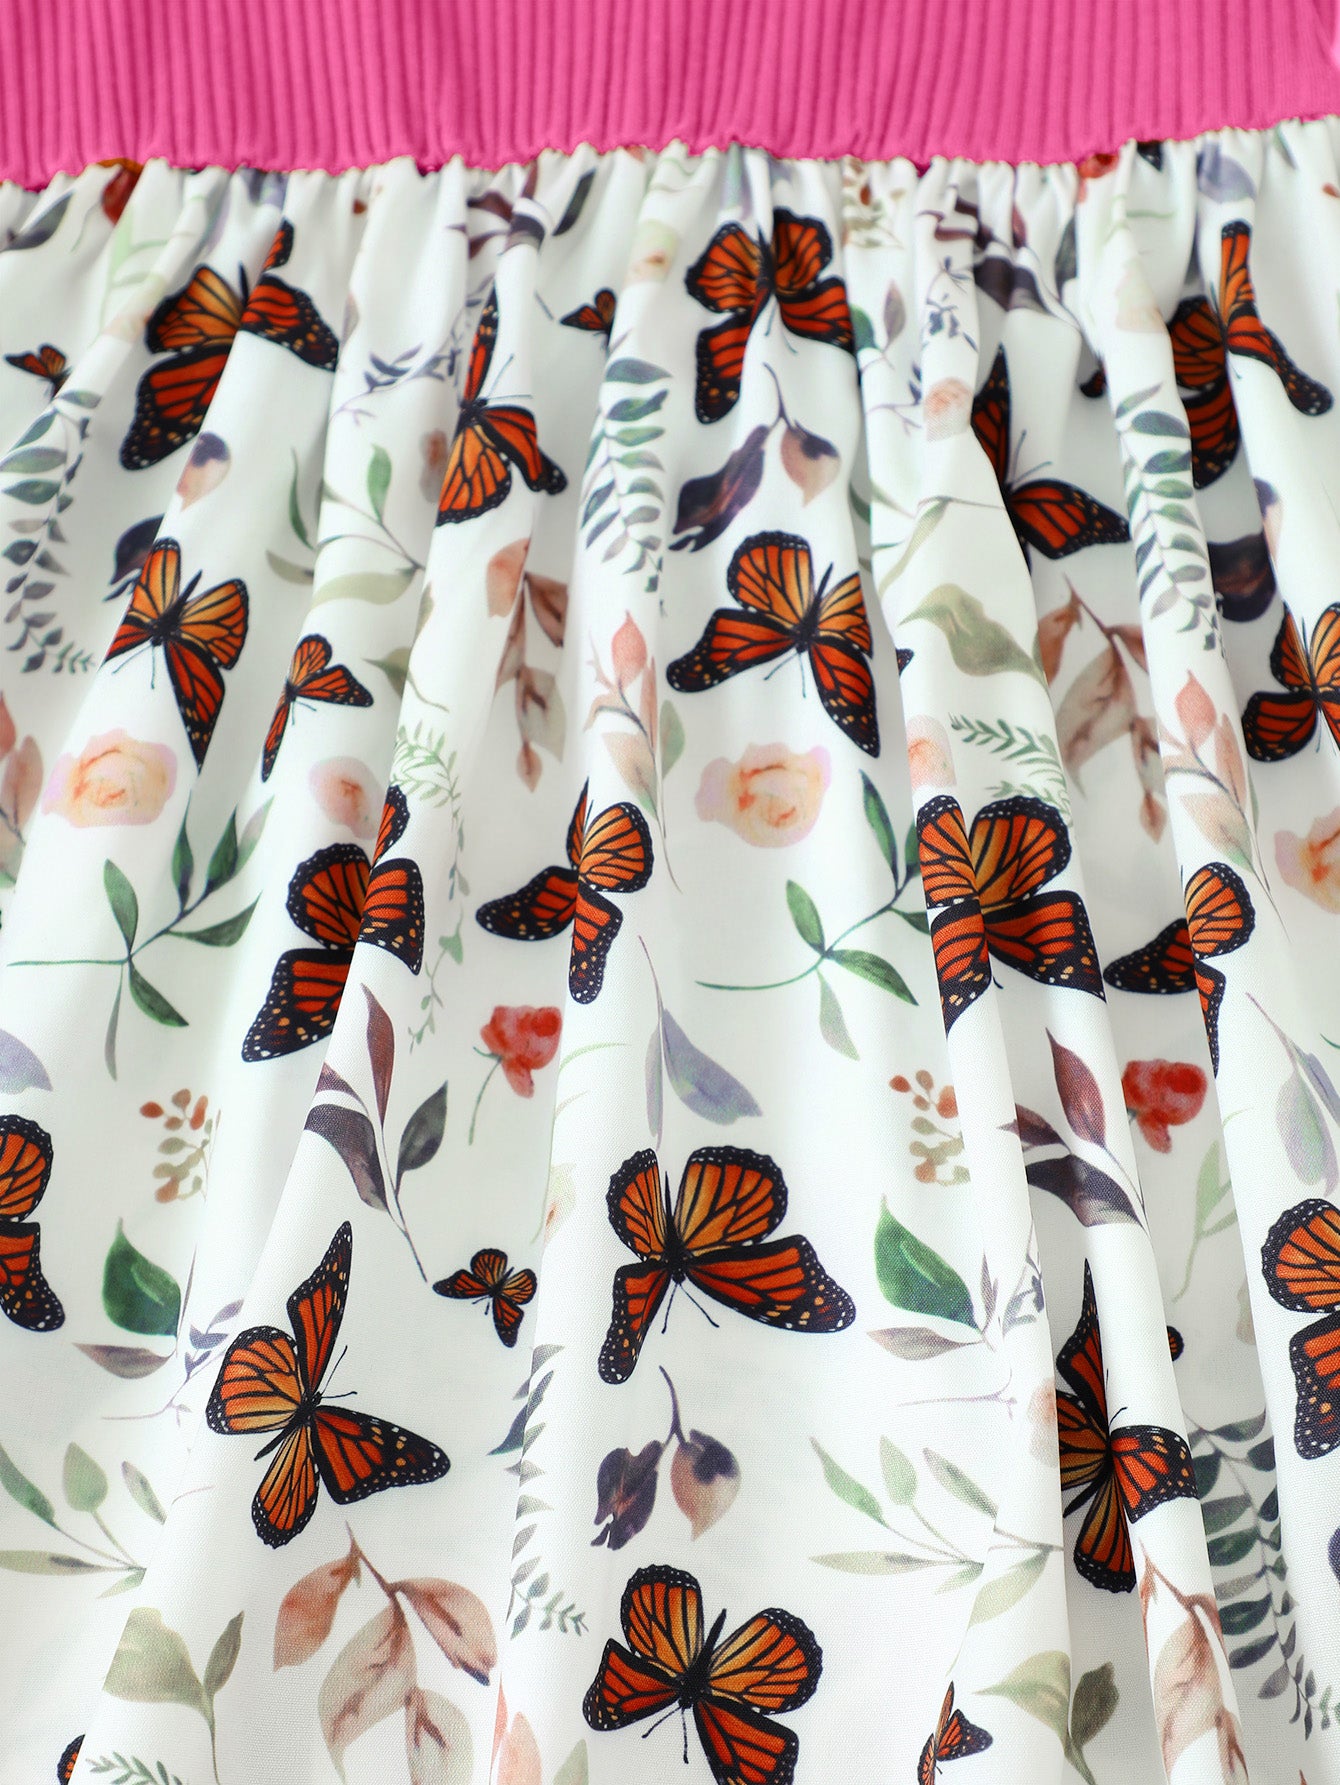 Children’s Girls Butterfly Print Bow Detail Dress